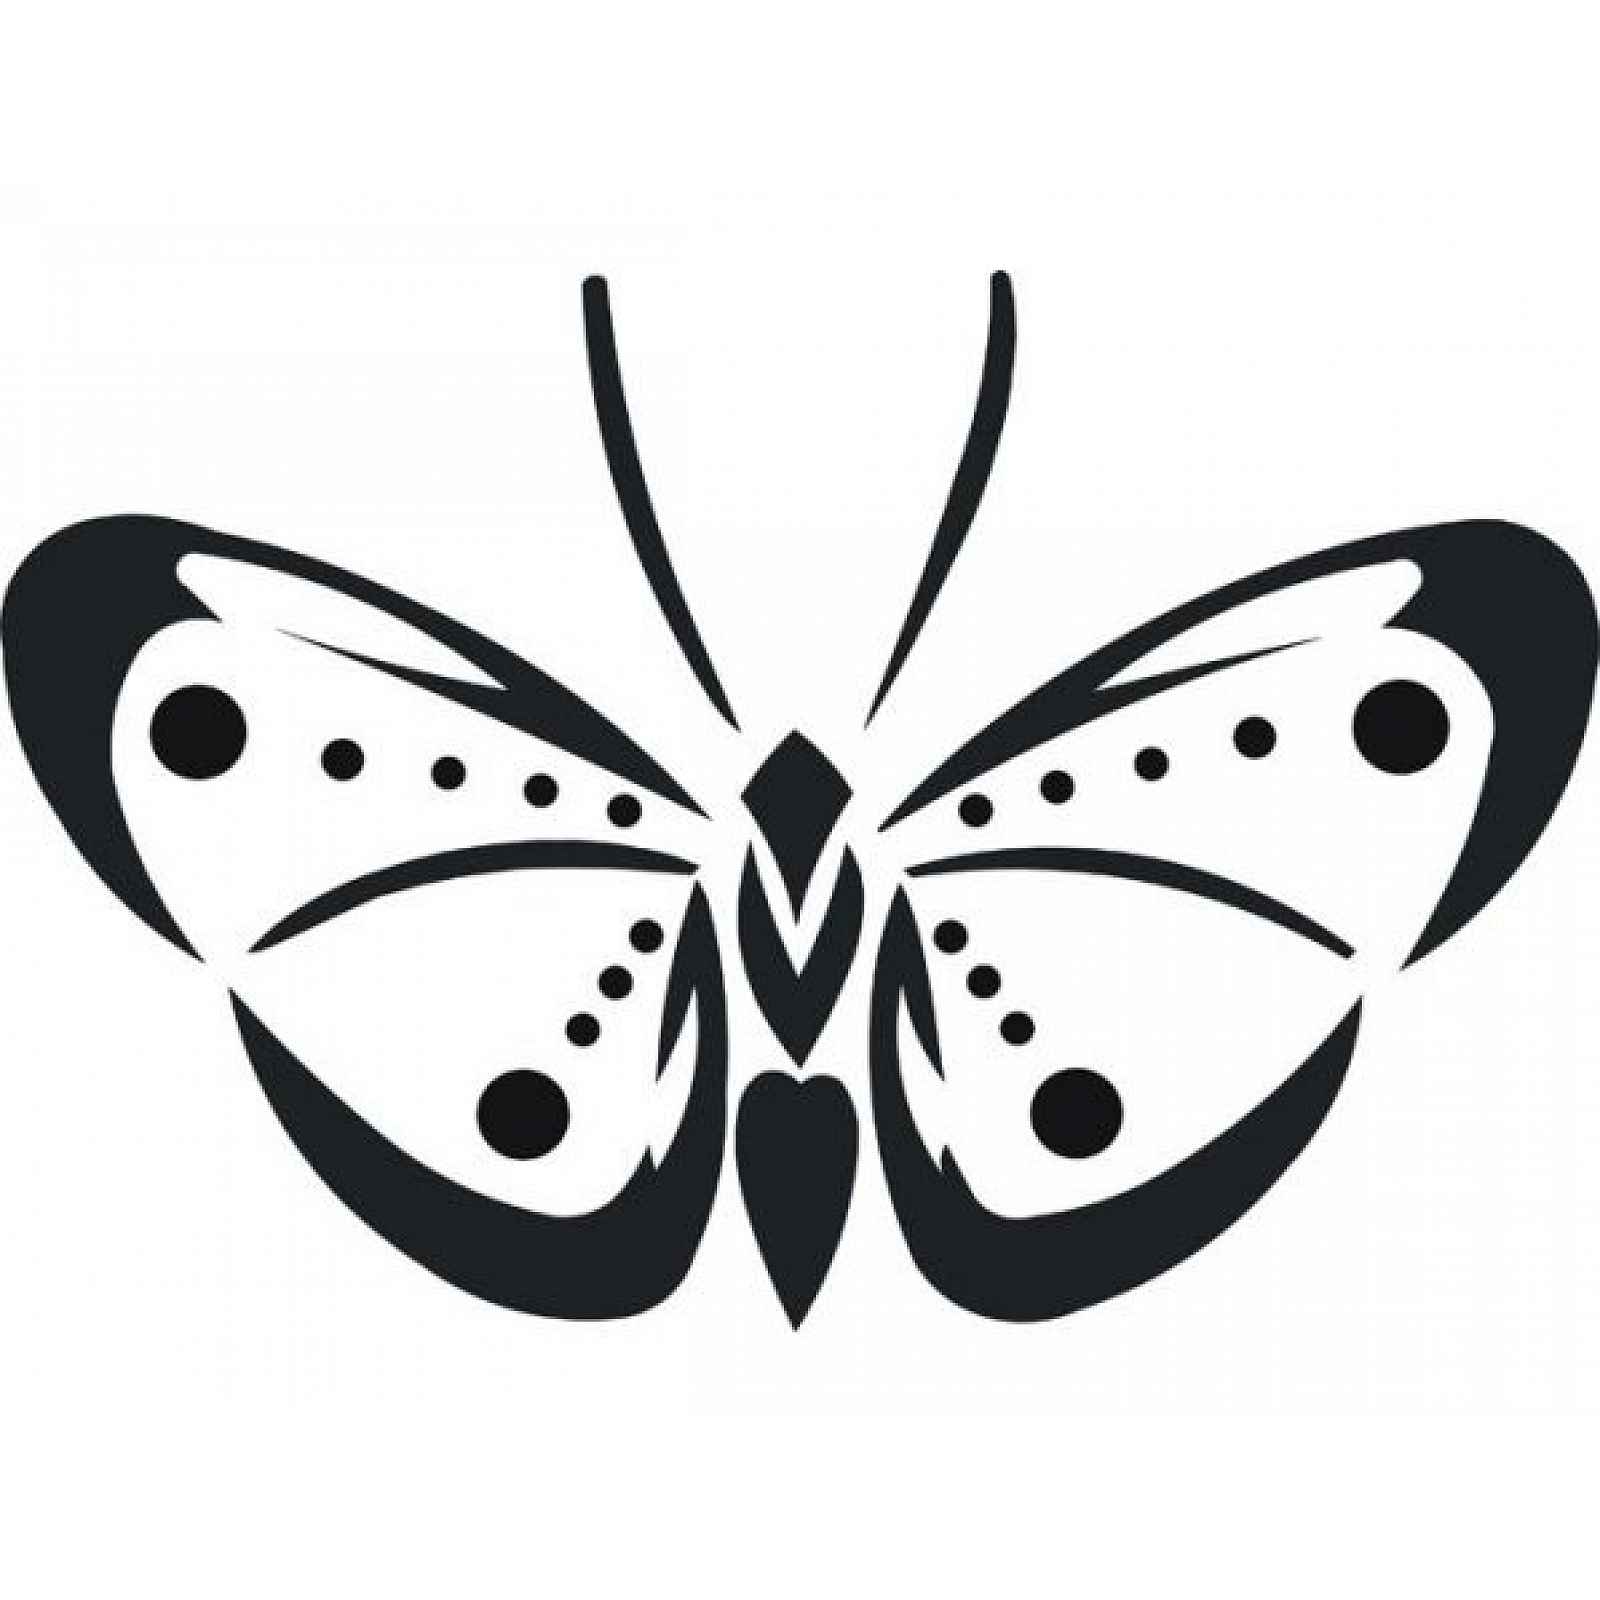 Samolepící dekorace Motýl 2, folie matná, barva černá